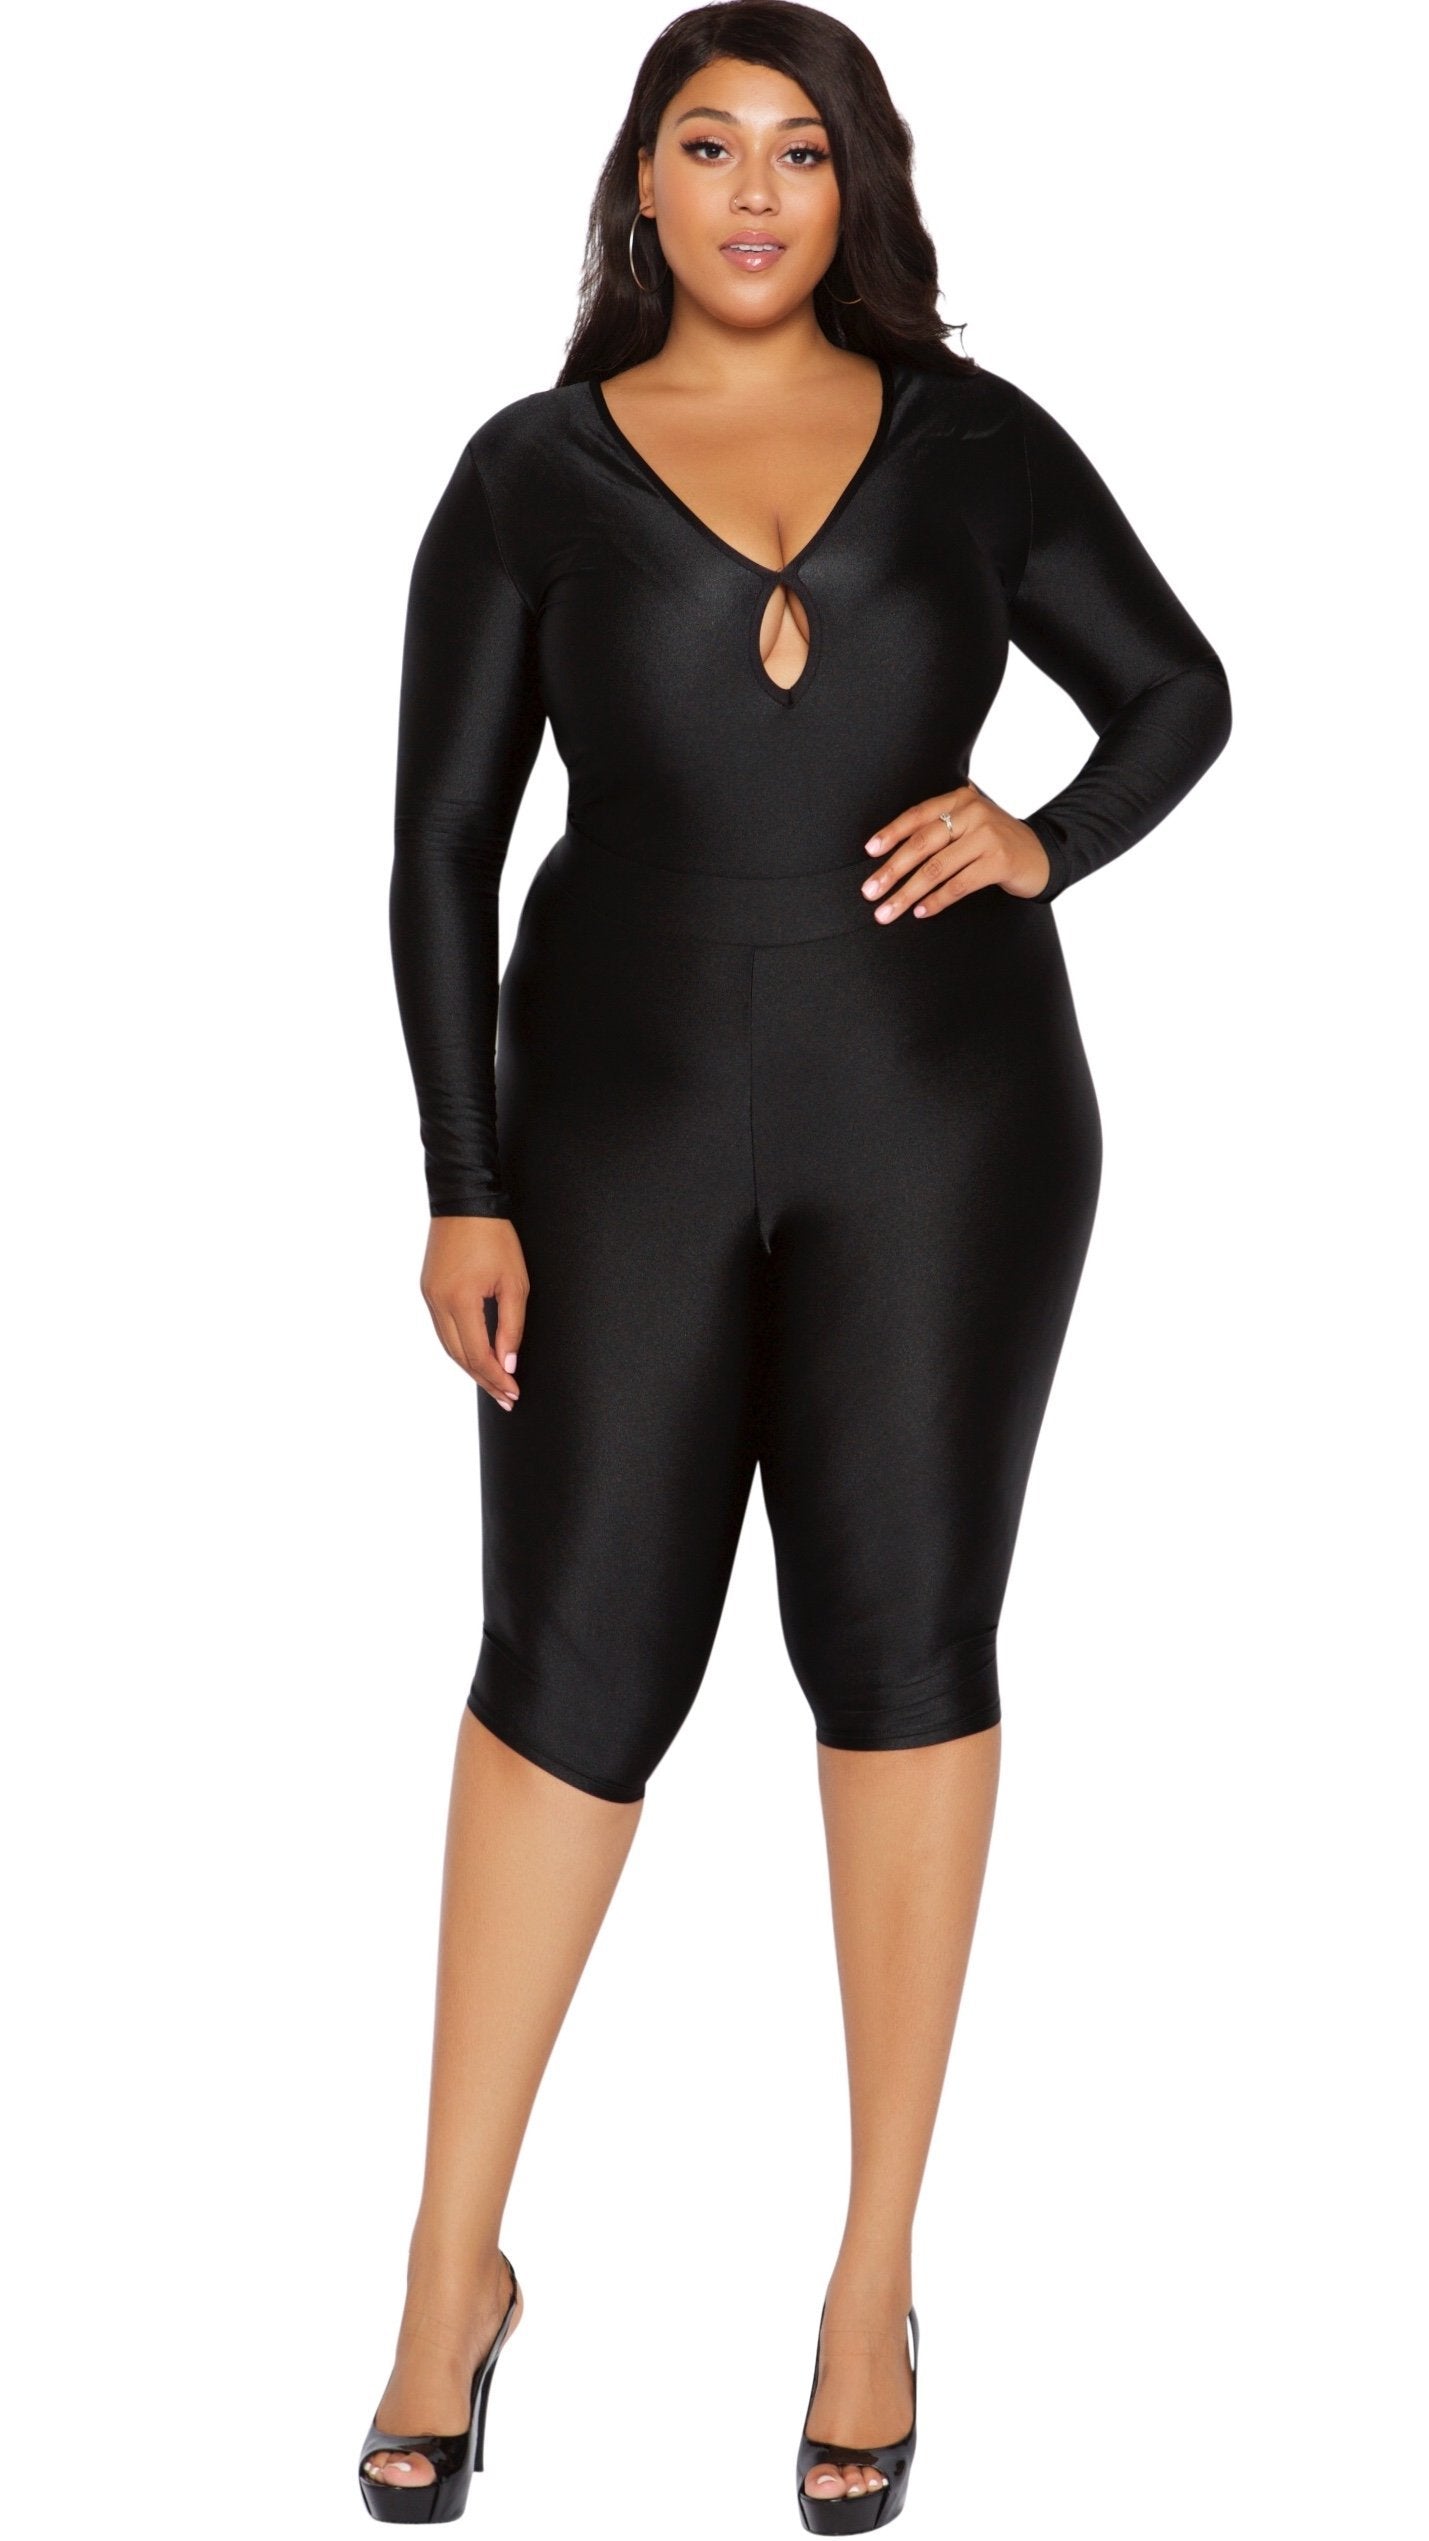 Plus Size Bodysuit (Black) 1x 2x 3x – Boughie Curves